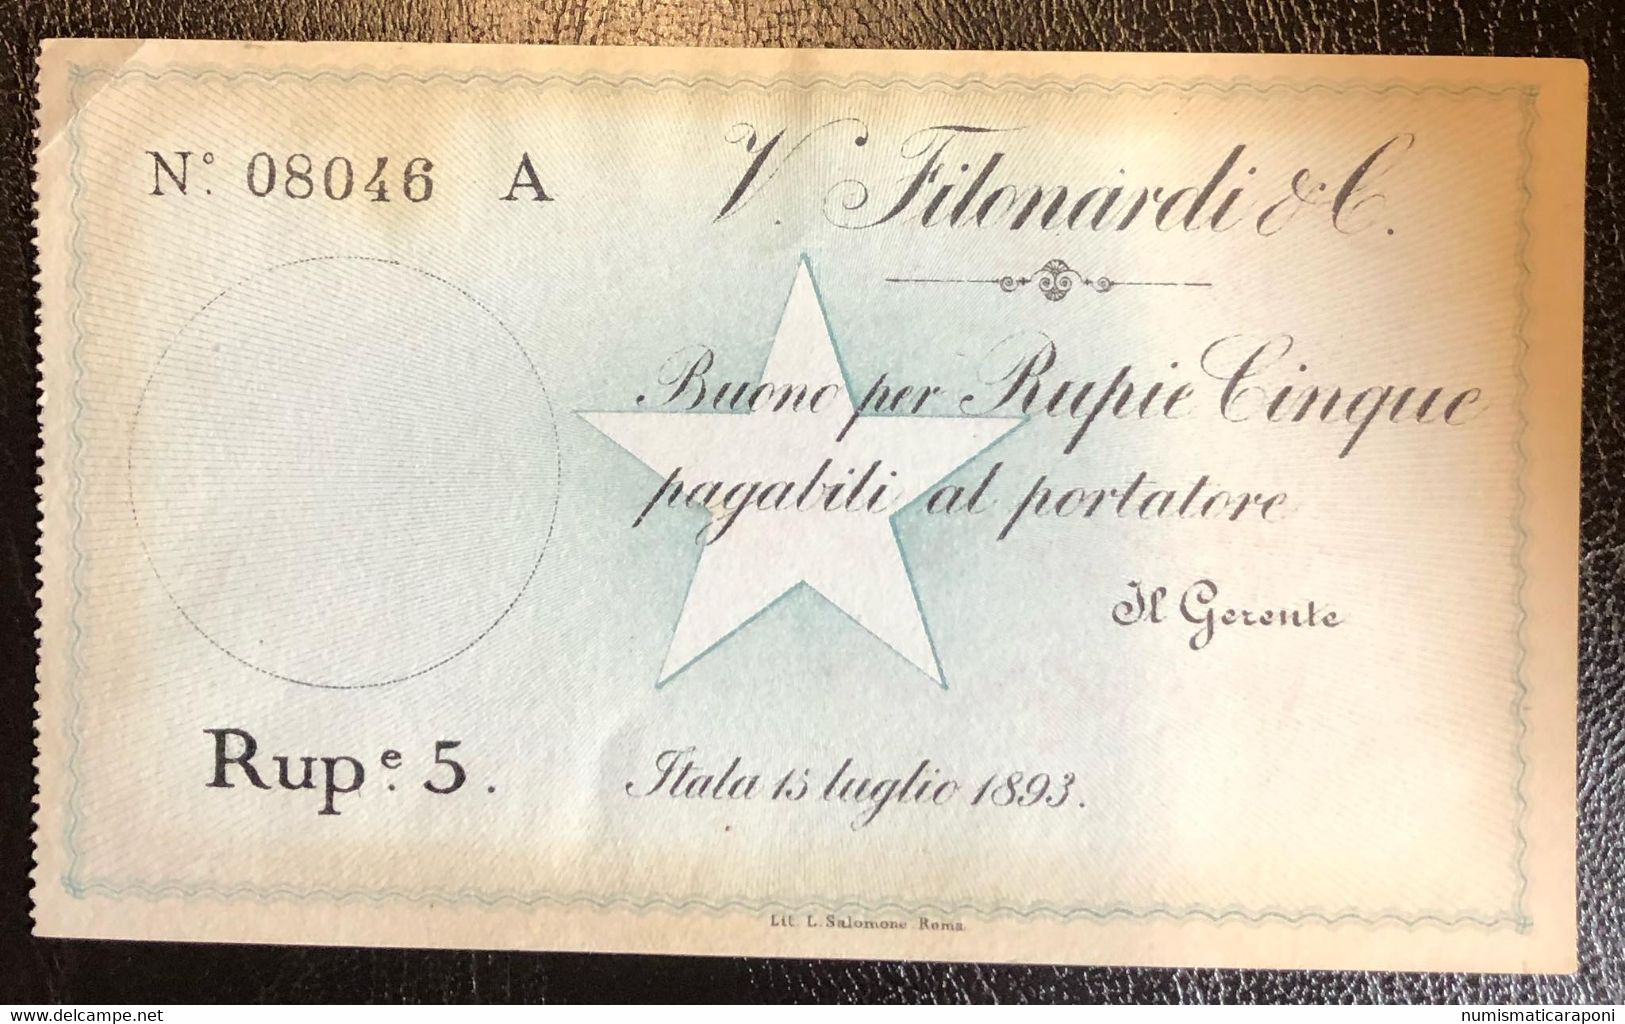 COMPAGNA ITALIANA PER IL BENADIR SOMALIA VINCENZO FILONARDI E C. 1893 5 RUPIE NON EMESSO R5 RRRRR Lotto.2475 - Somalia